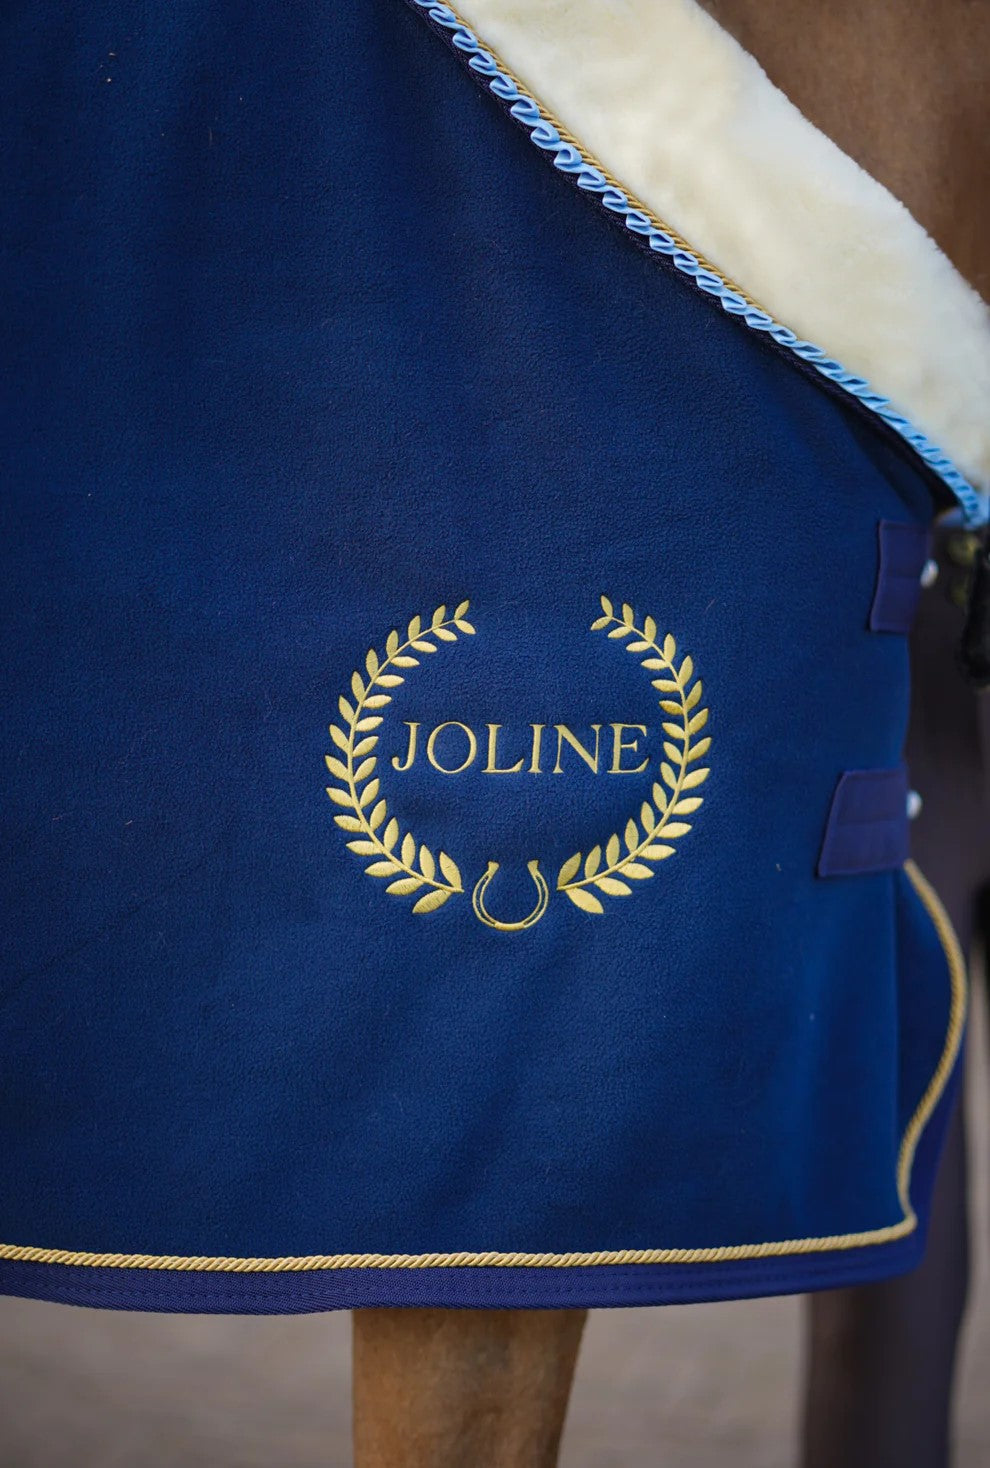 Joline - Stævnedækken